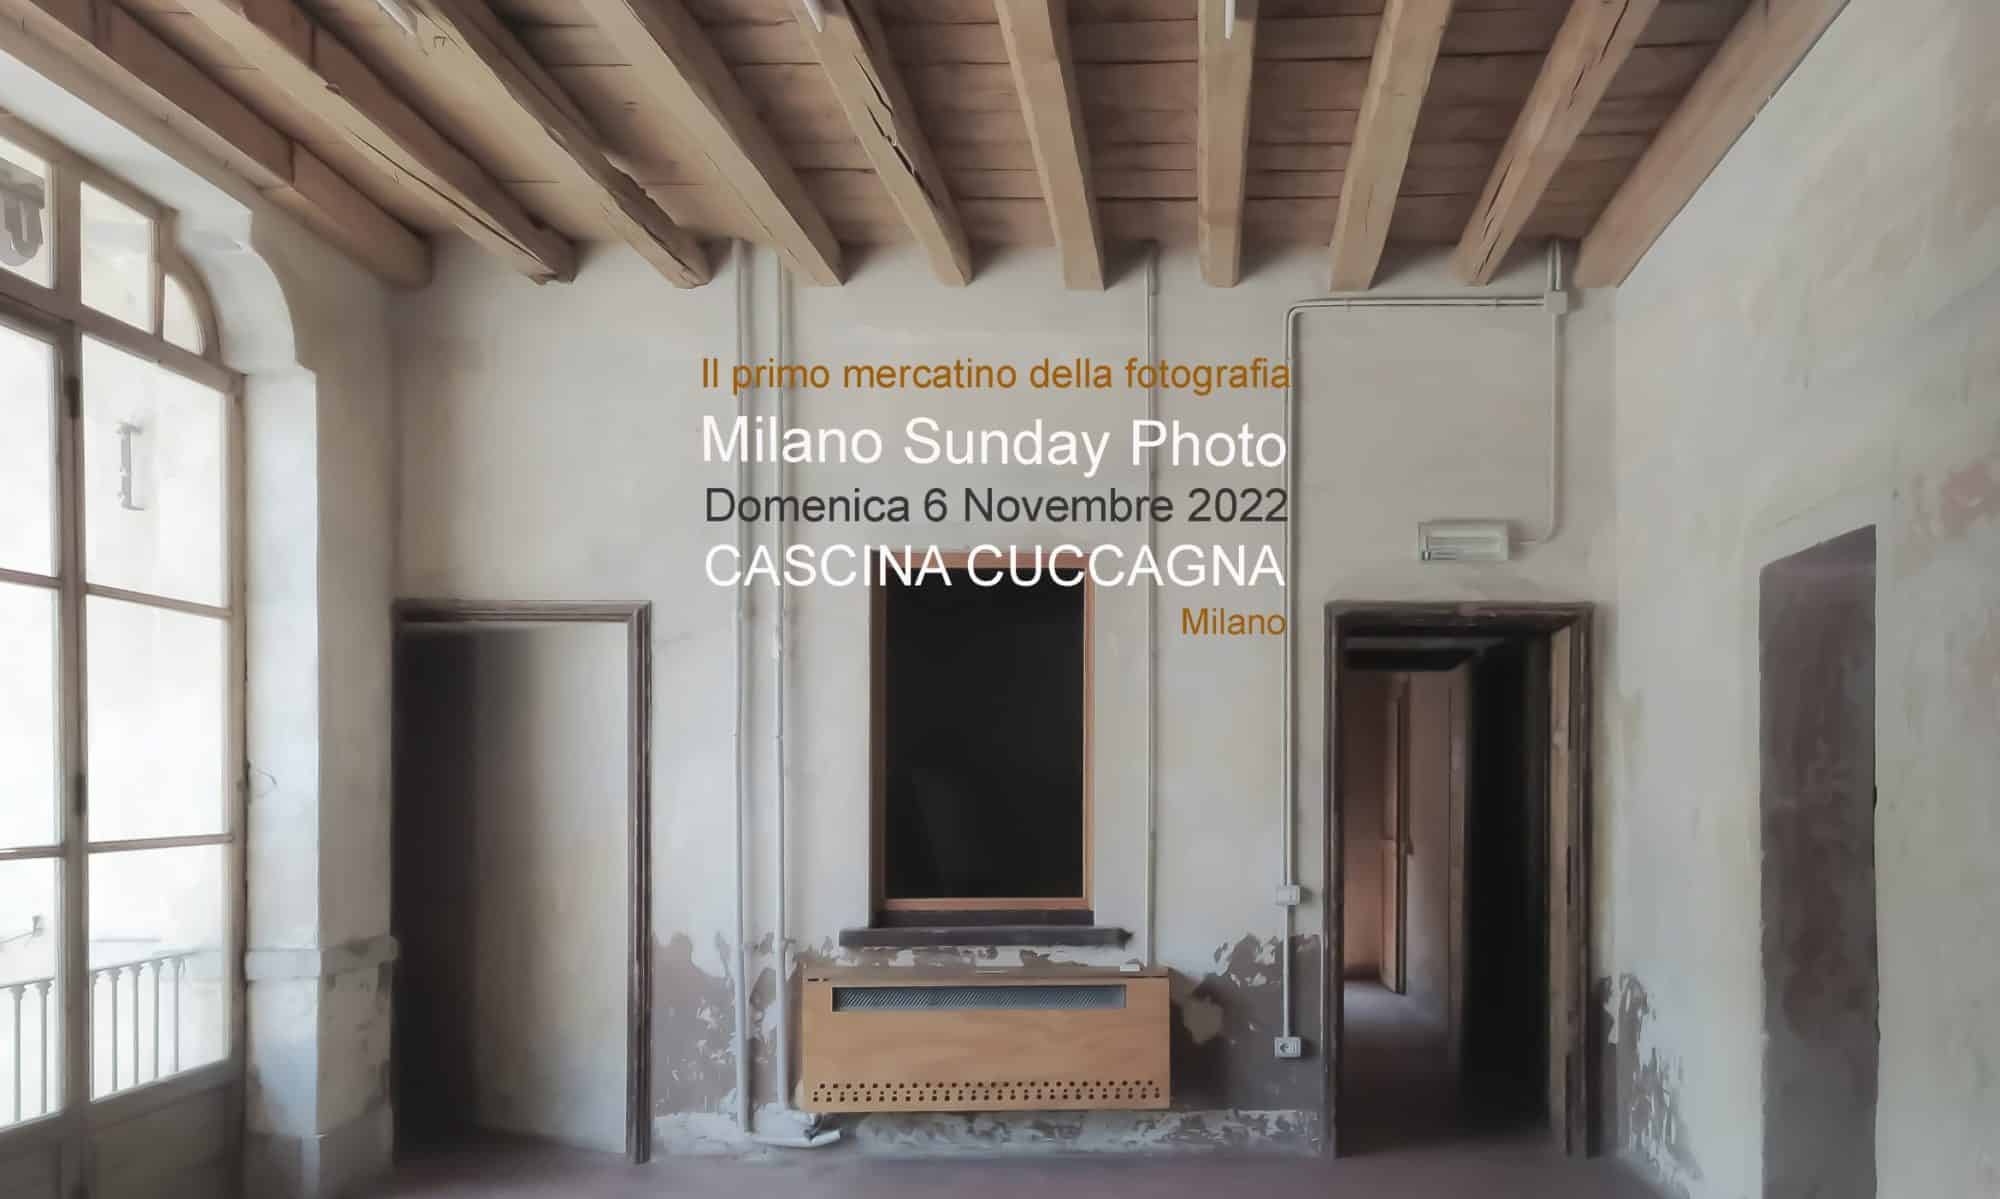 Milano Sunday Photo: il primo mercatino della fotografia